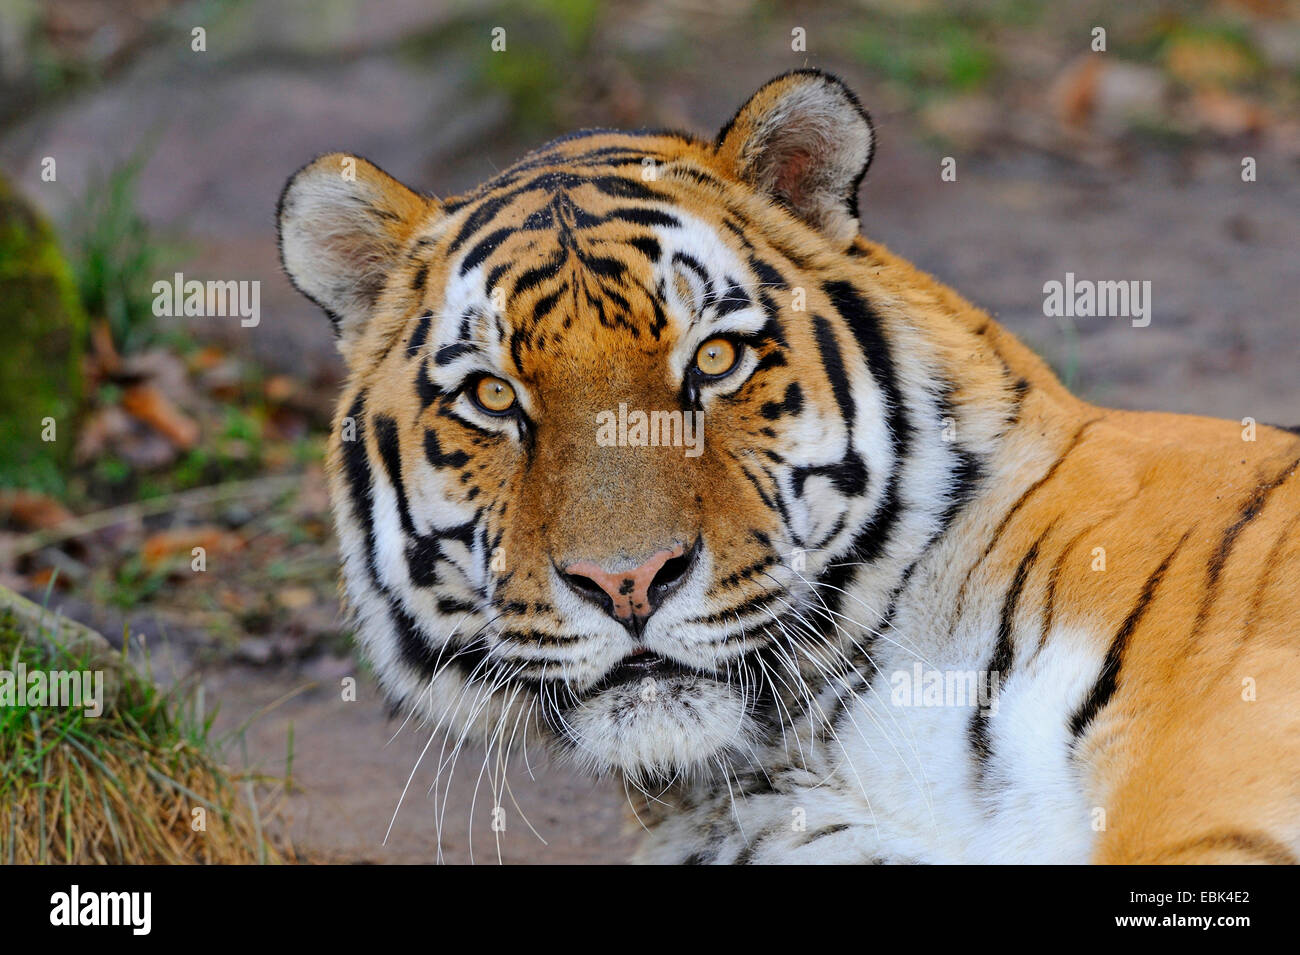 Siberian tiger, Amurian tiger (Panthera tigris altaica), portrait Stock Photo